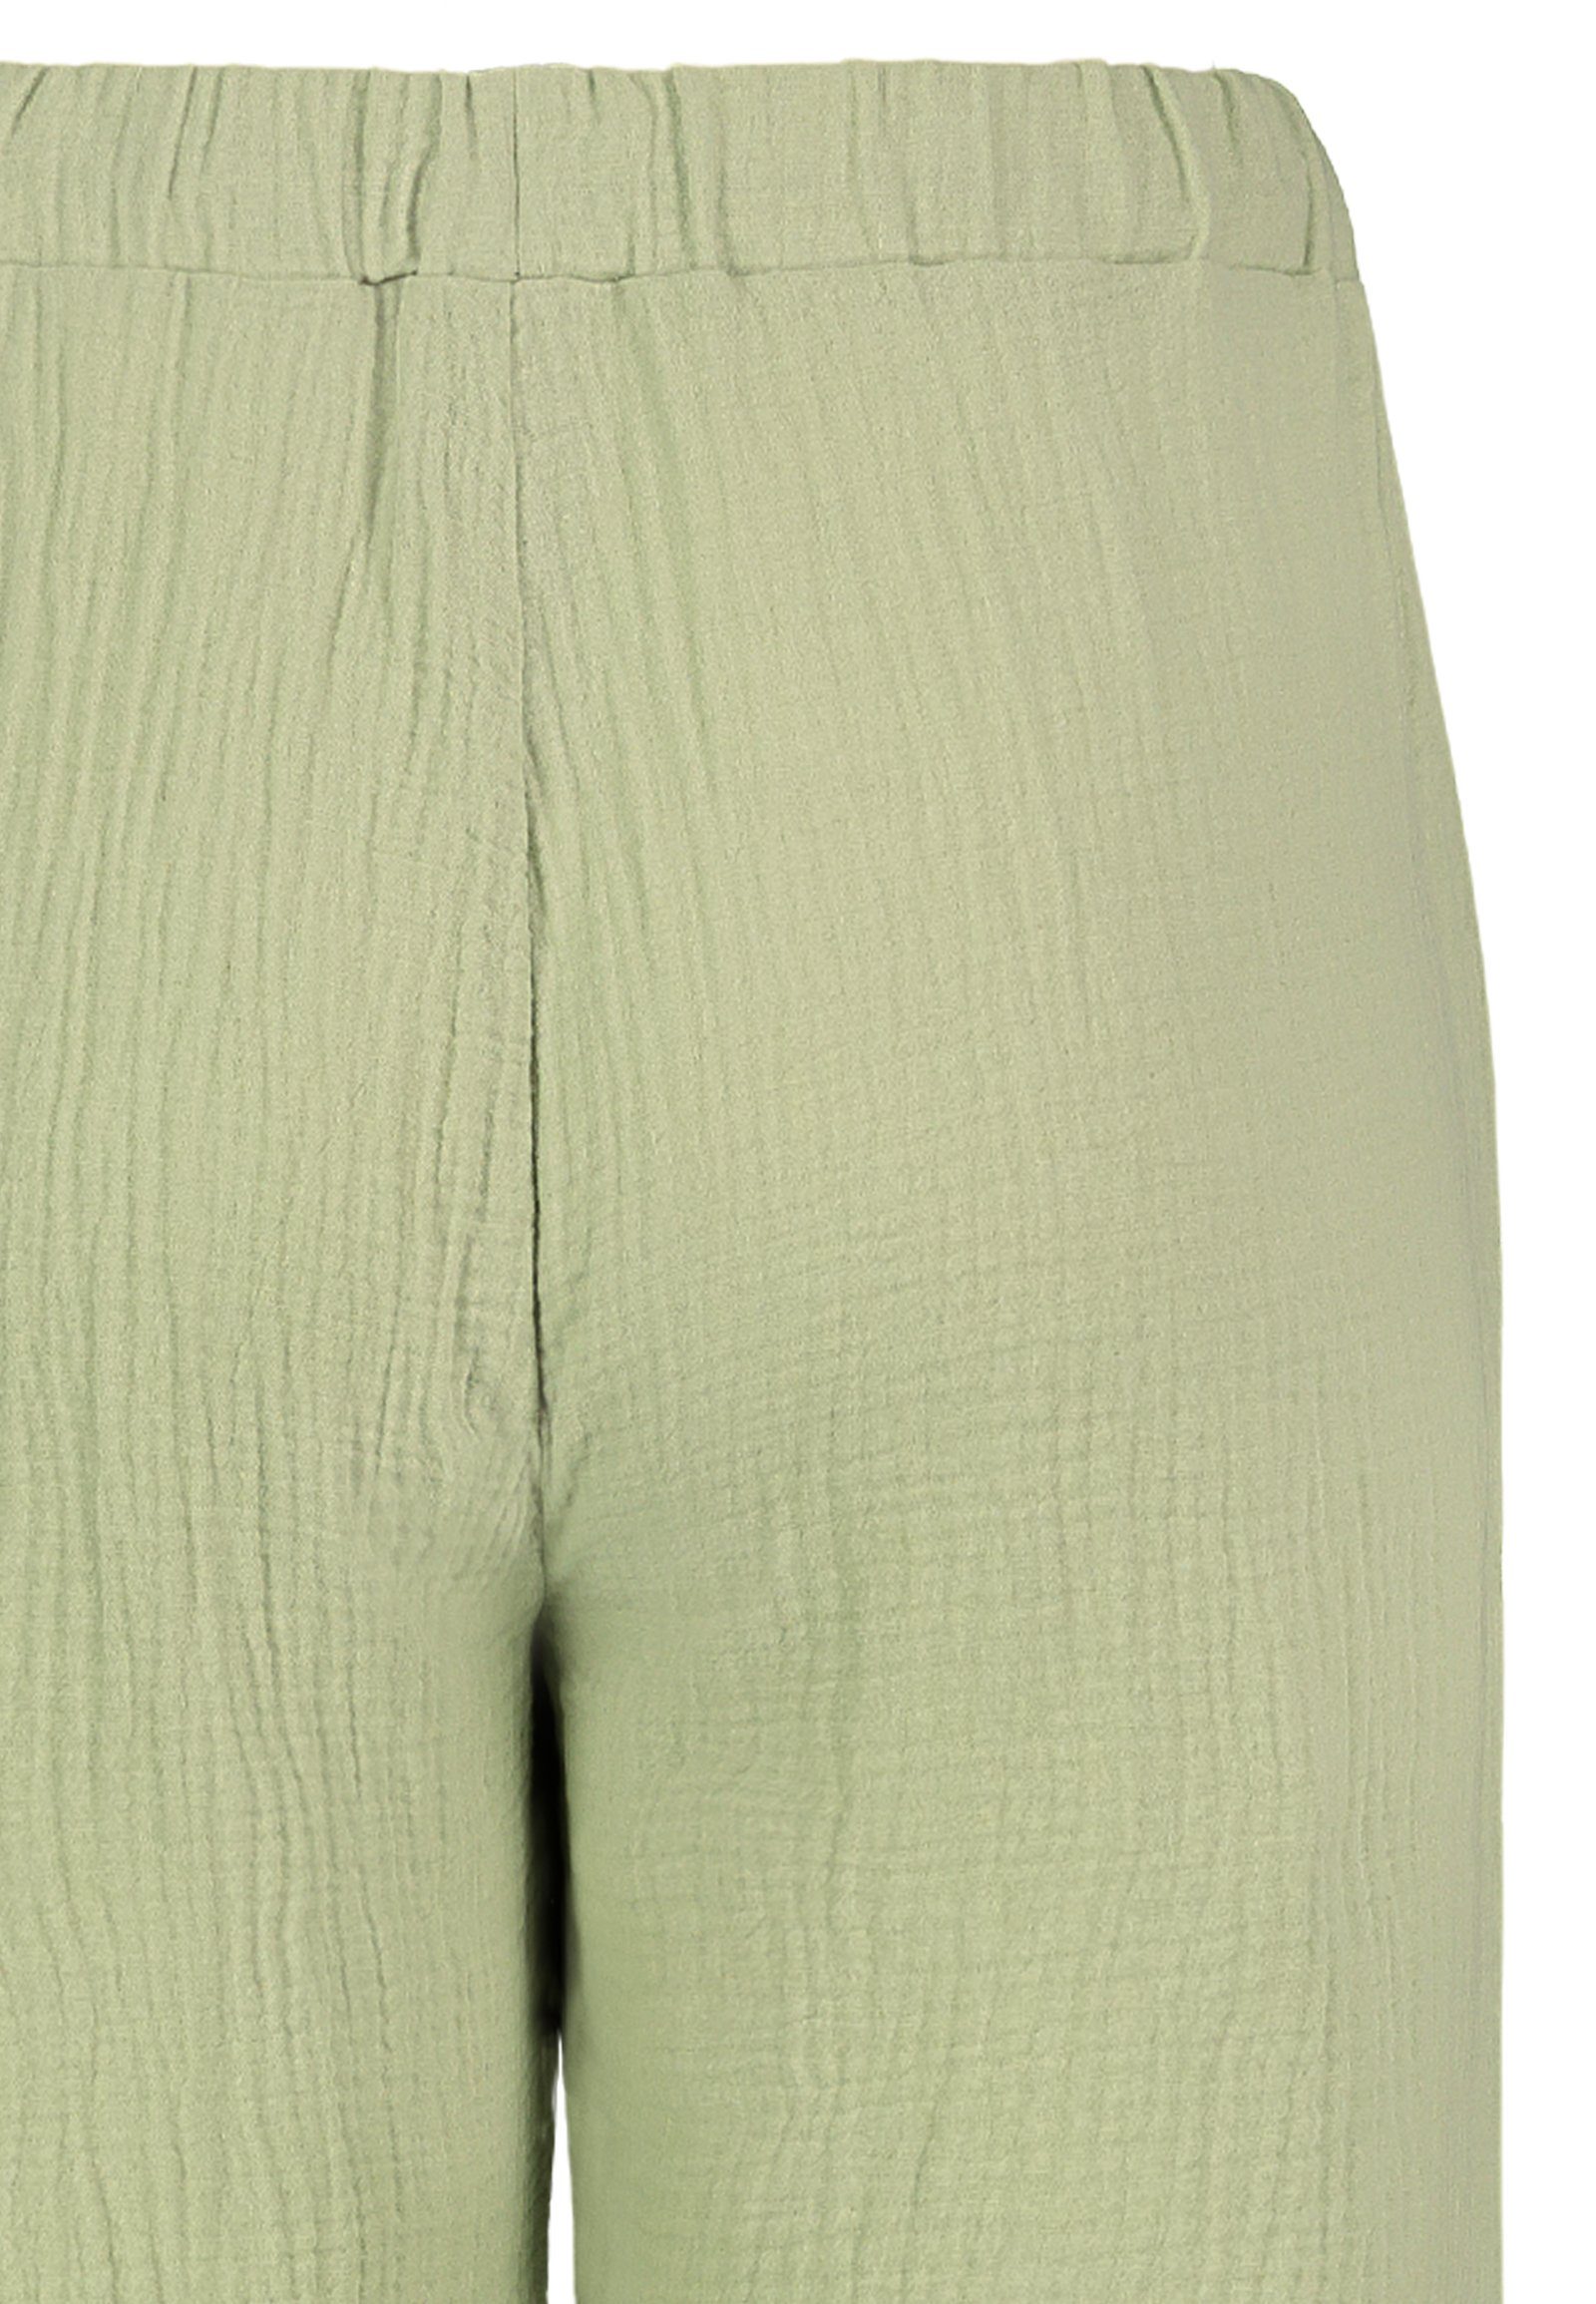 Lange Hose Musselin light-green Stoffhose SUBLEVEL